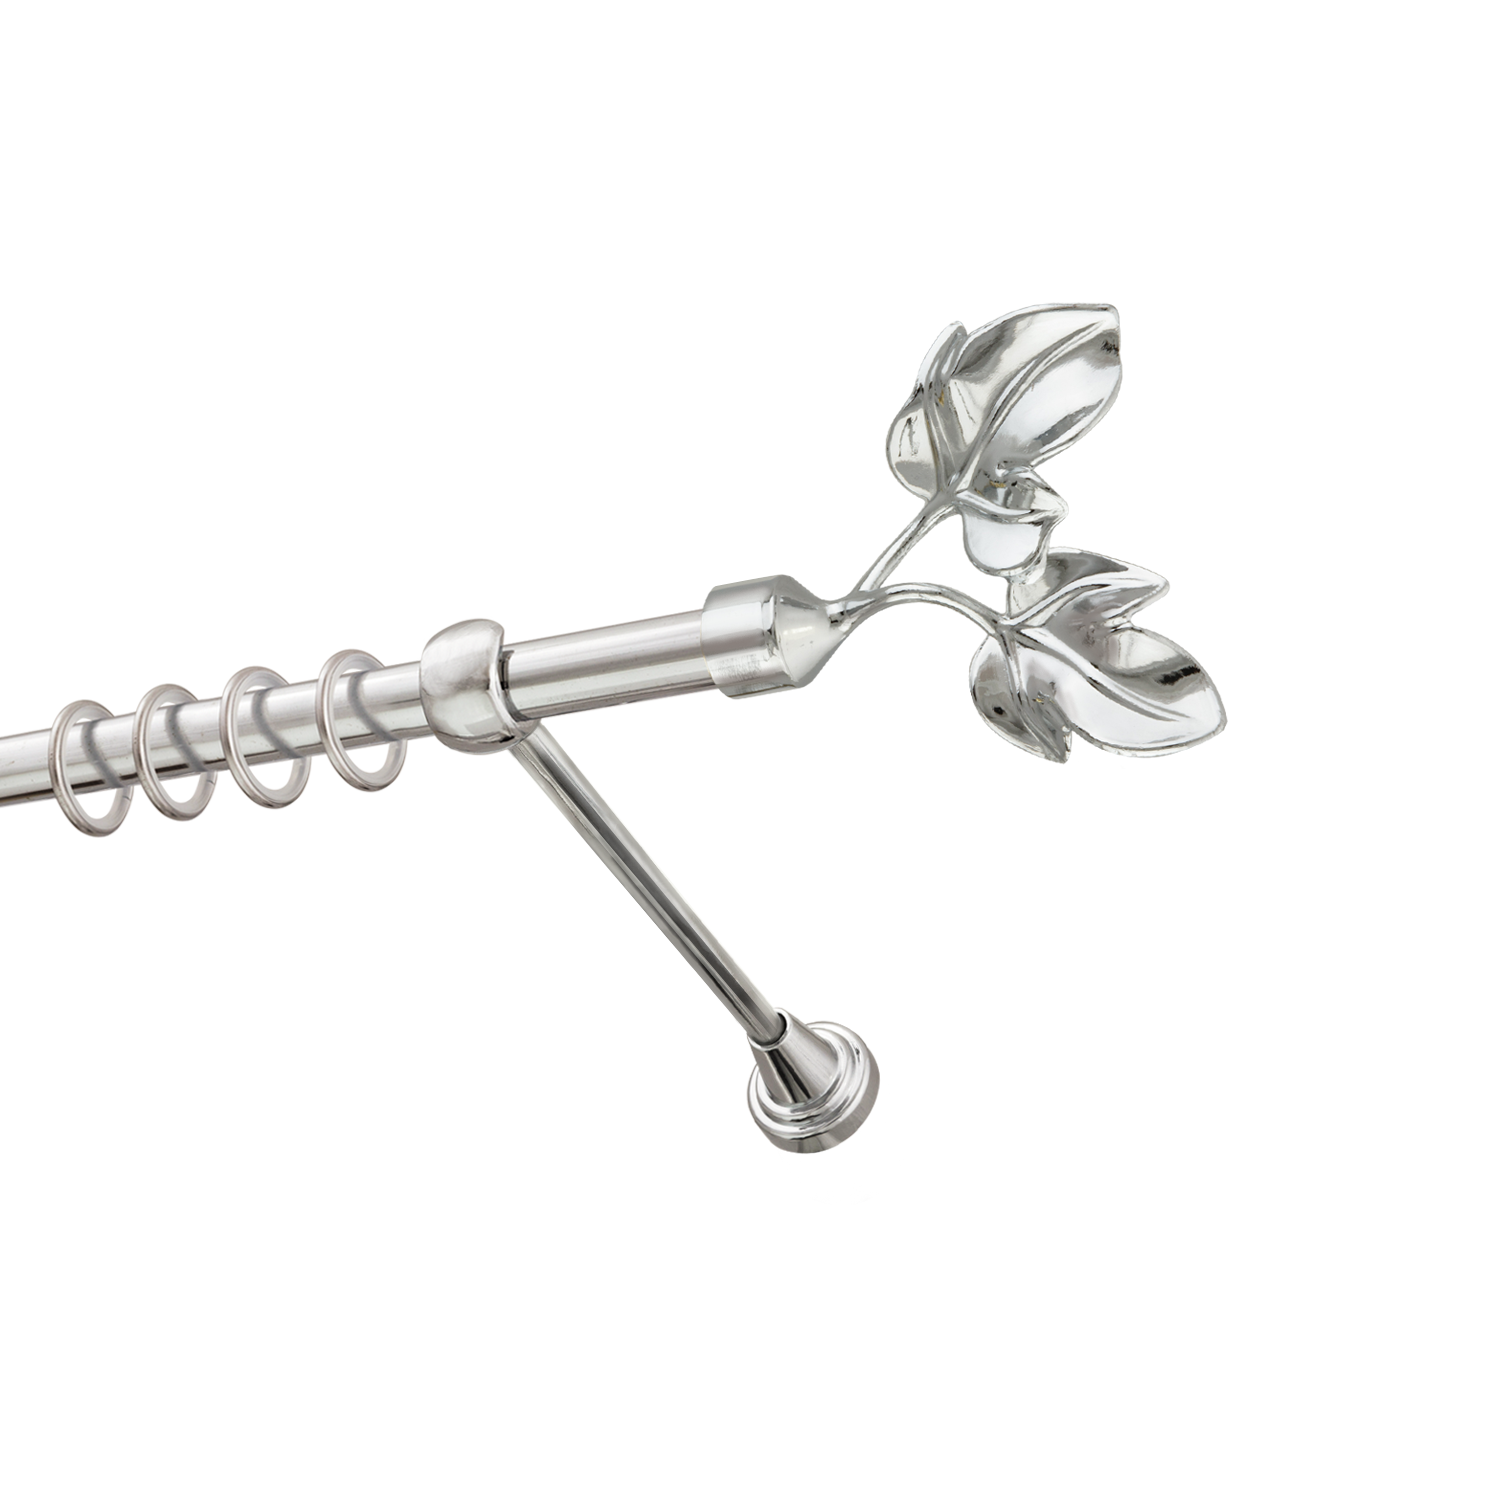 Металлический карниз для штор Листья, однорядный 16 мм, серебро, гладкая штанга, длина 300 см - фото Wikidecor.ru